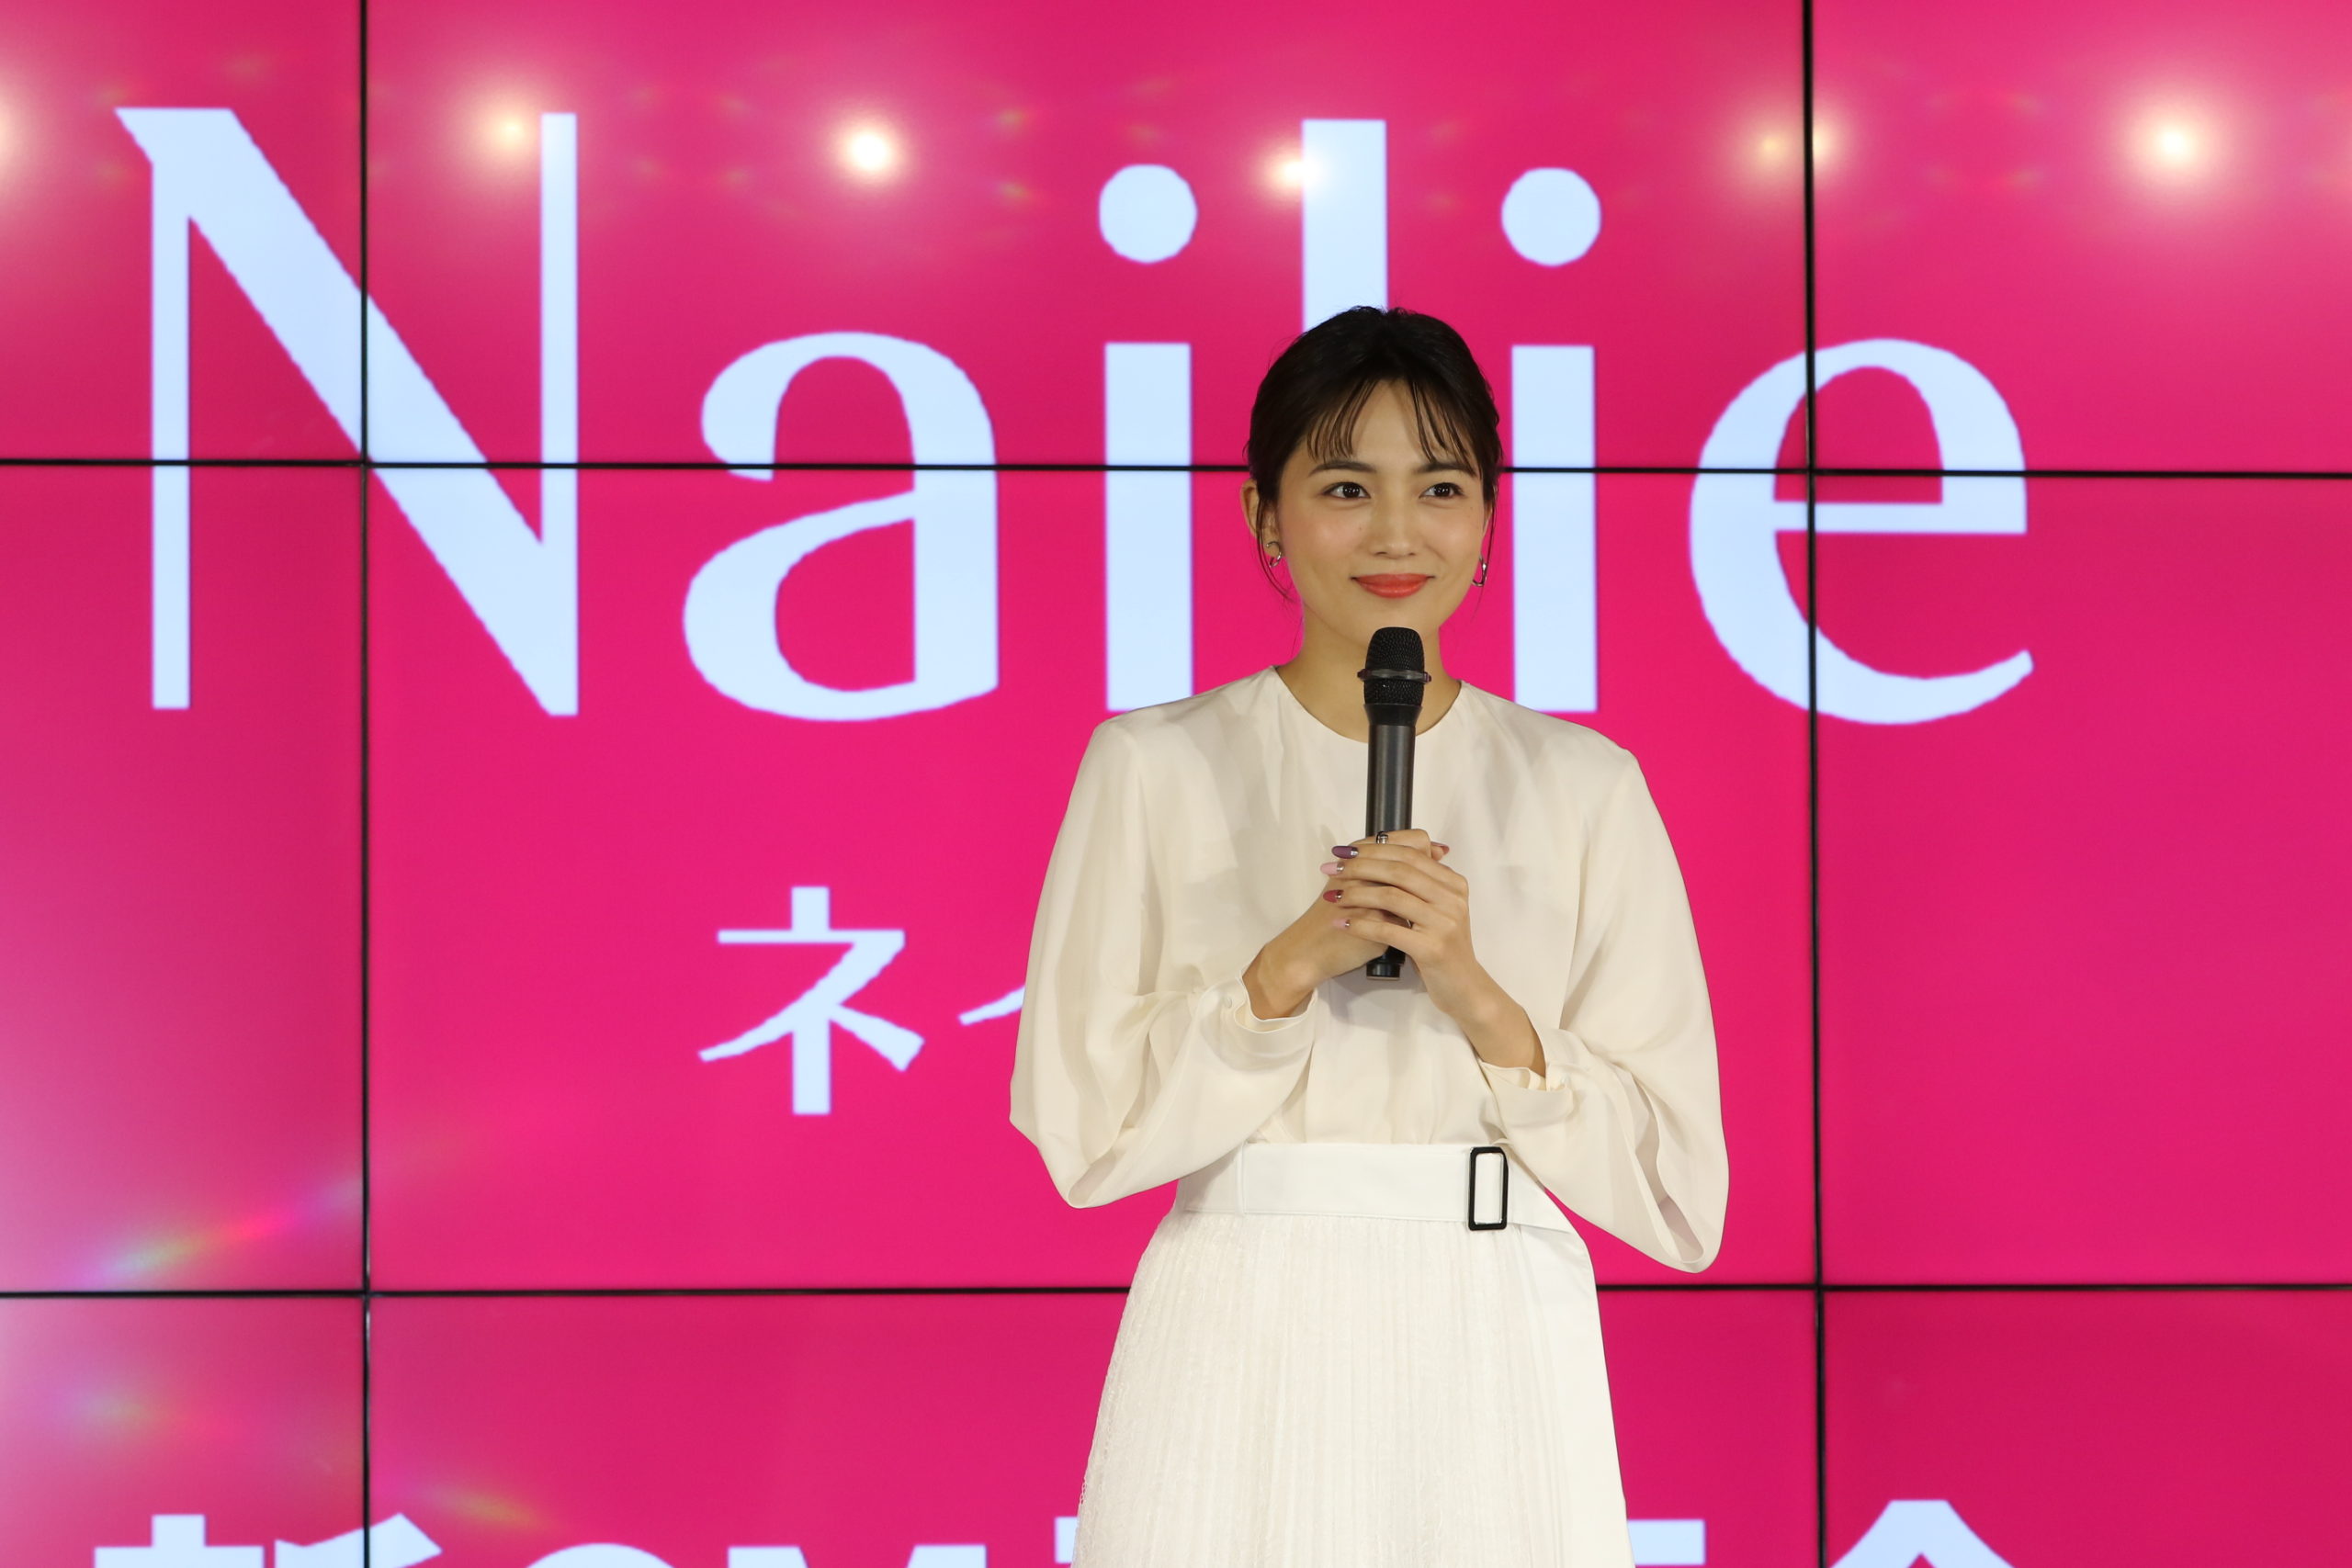 川口春奈／2020年1月29日、東京都内で開催された、「Nailie(ネイリー)」新CM発表会にて